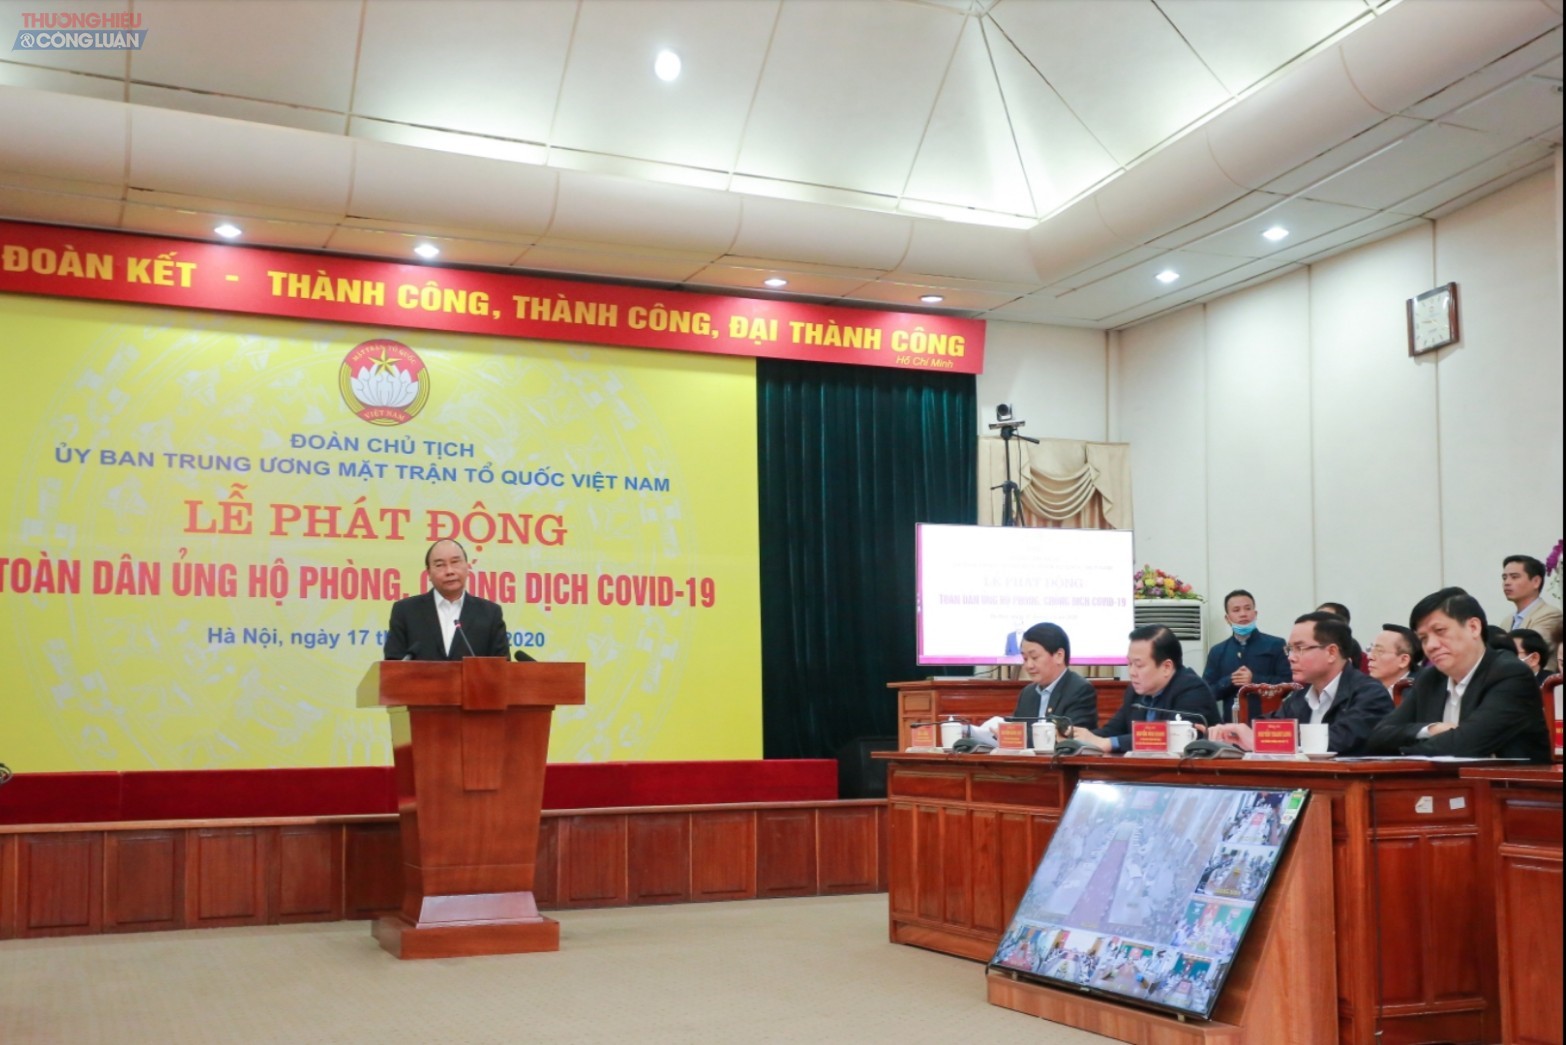 Thủ tướng Chính phủ Nguyễn Xuân Phúc phát biểu tại buổi lễ